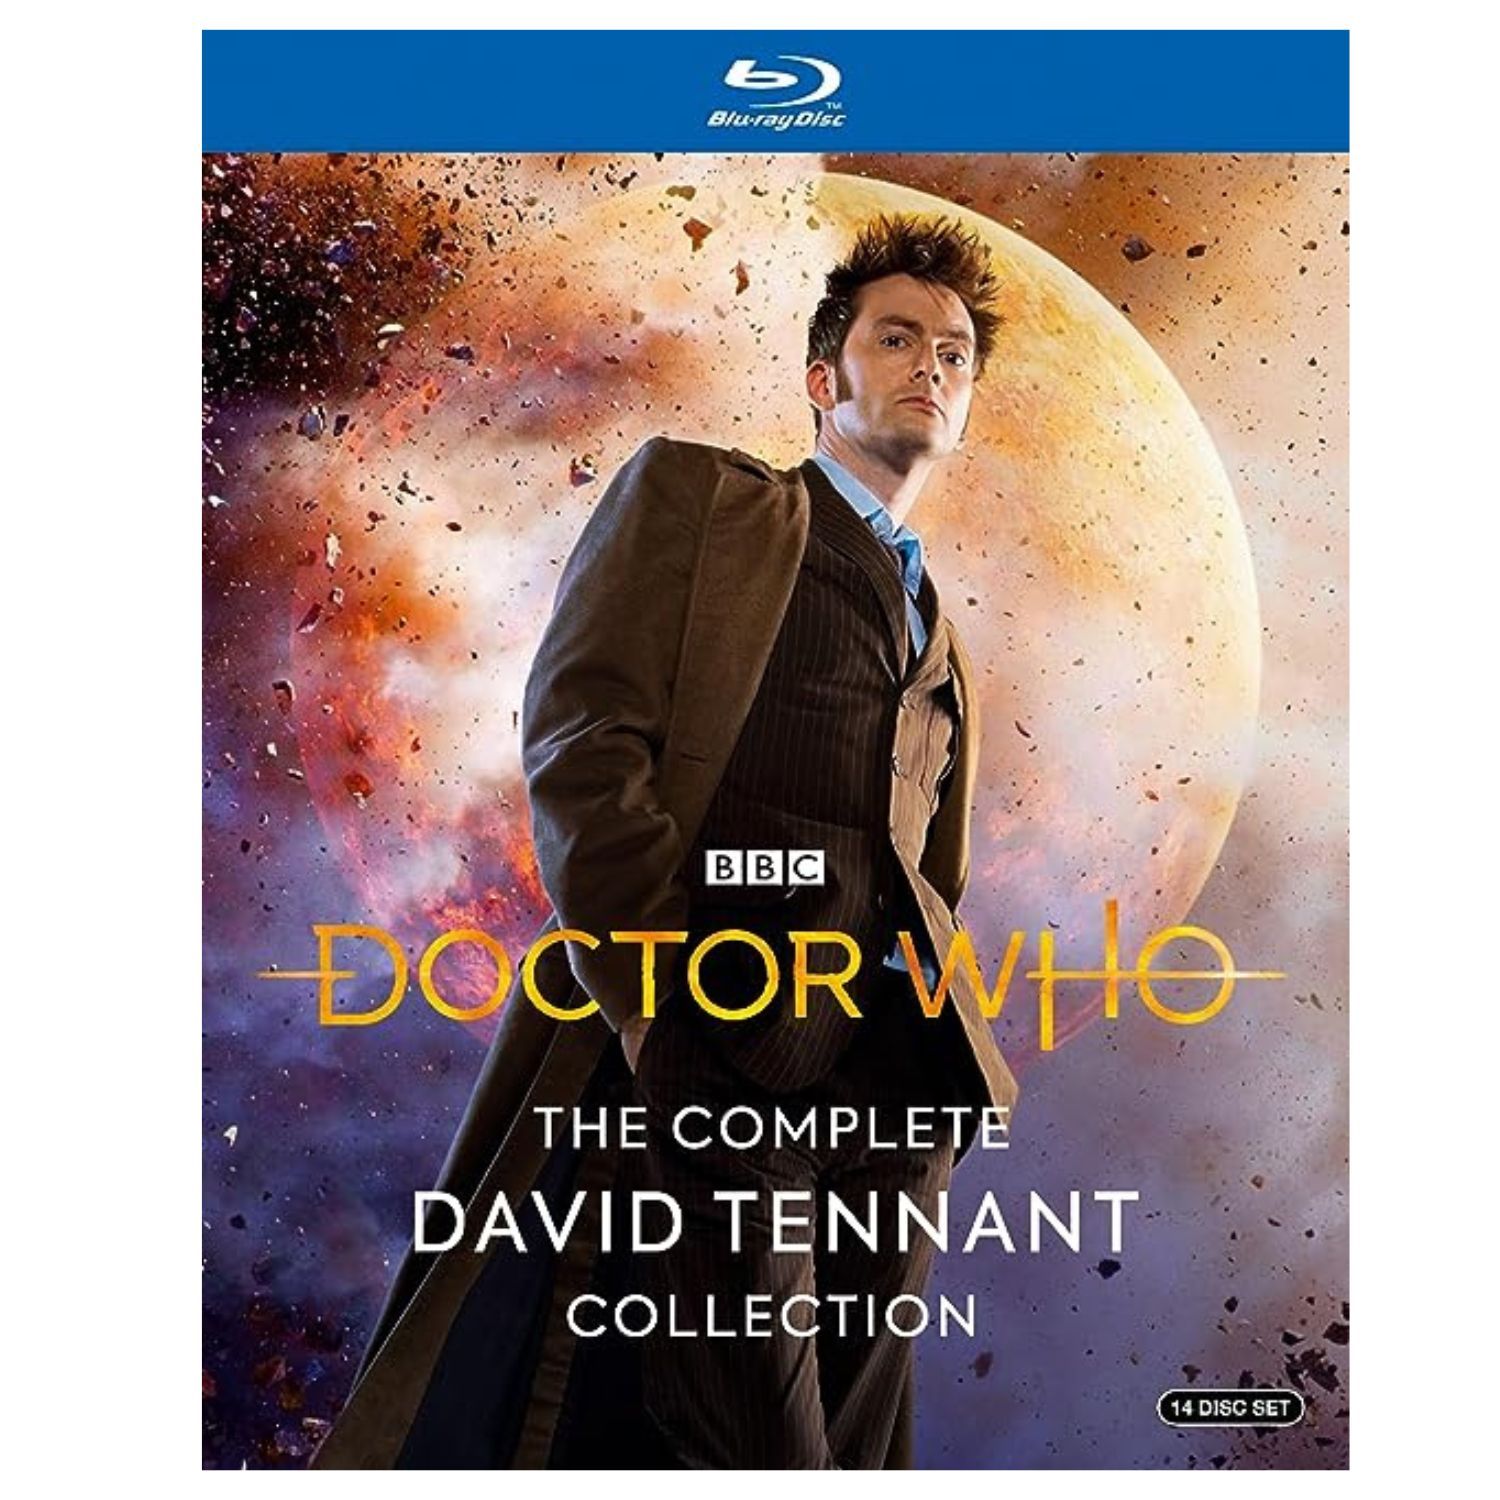 Coleção de DVDs Doctor Who David Tennant em Blu-Ray